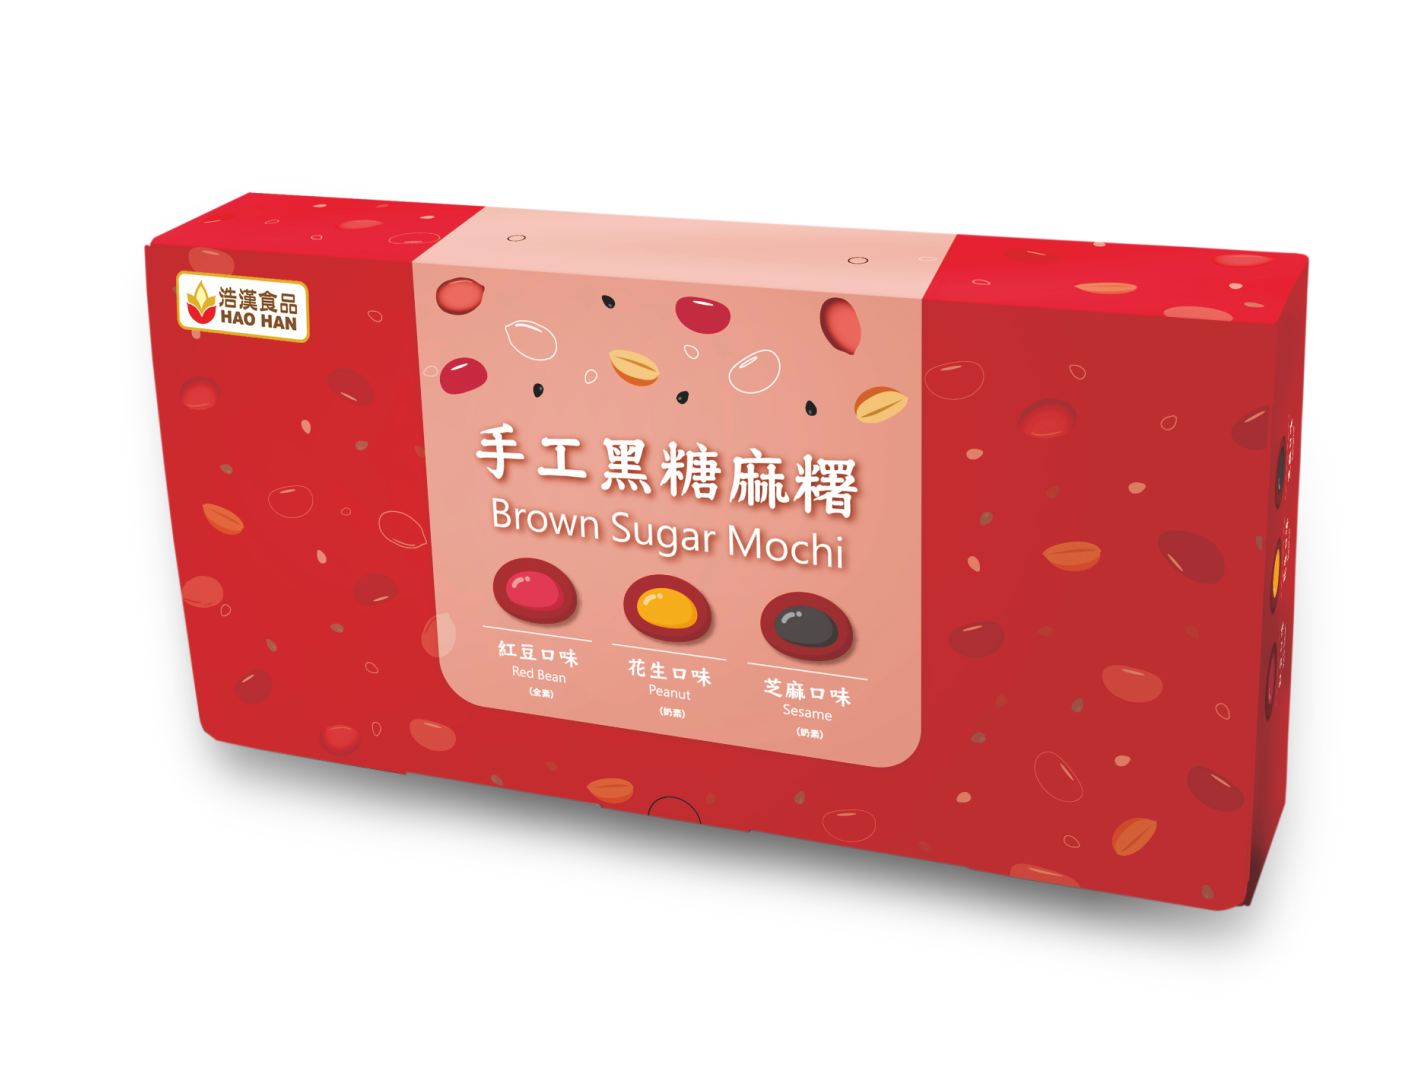 手工黑糖麻糬綜合禮盒<br>Brown Sugar Mochi Gift Box  |產品資訊|麻糬－通路用|手工麻糬系列-低溫